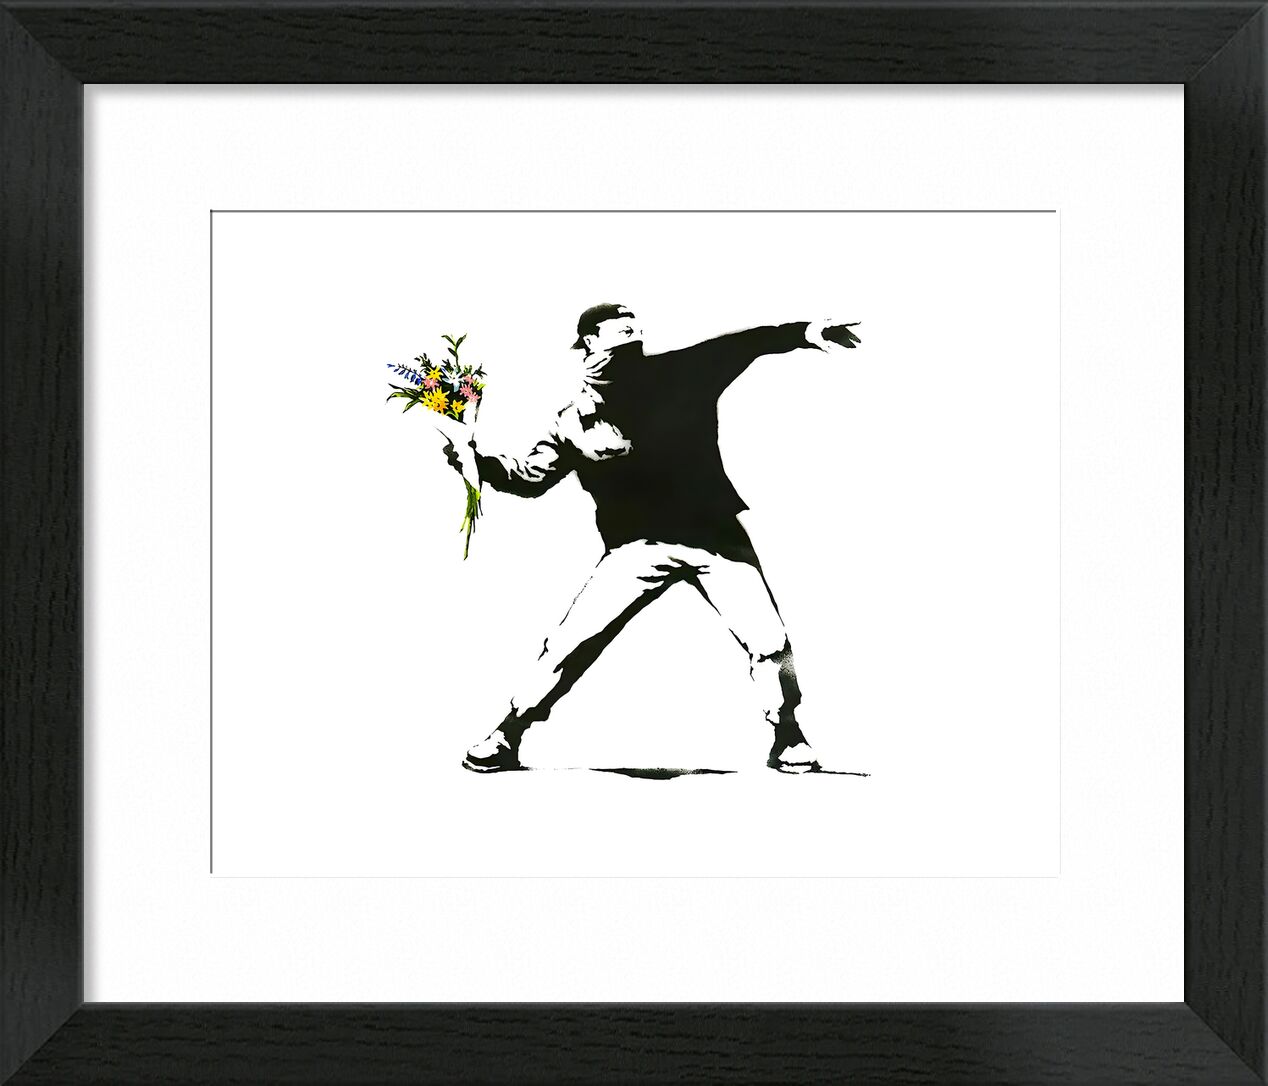 Flower Chucker - BANKSY desde Bellas artes, Prodi Art, Banksy, arte callejero, flor, pintada, lanzacohetes